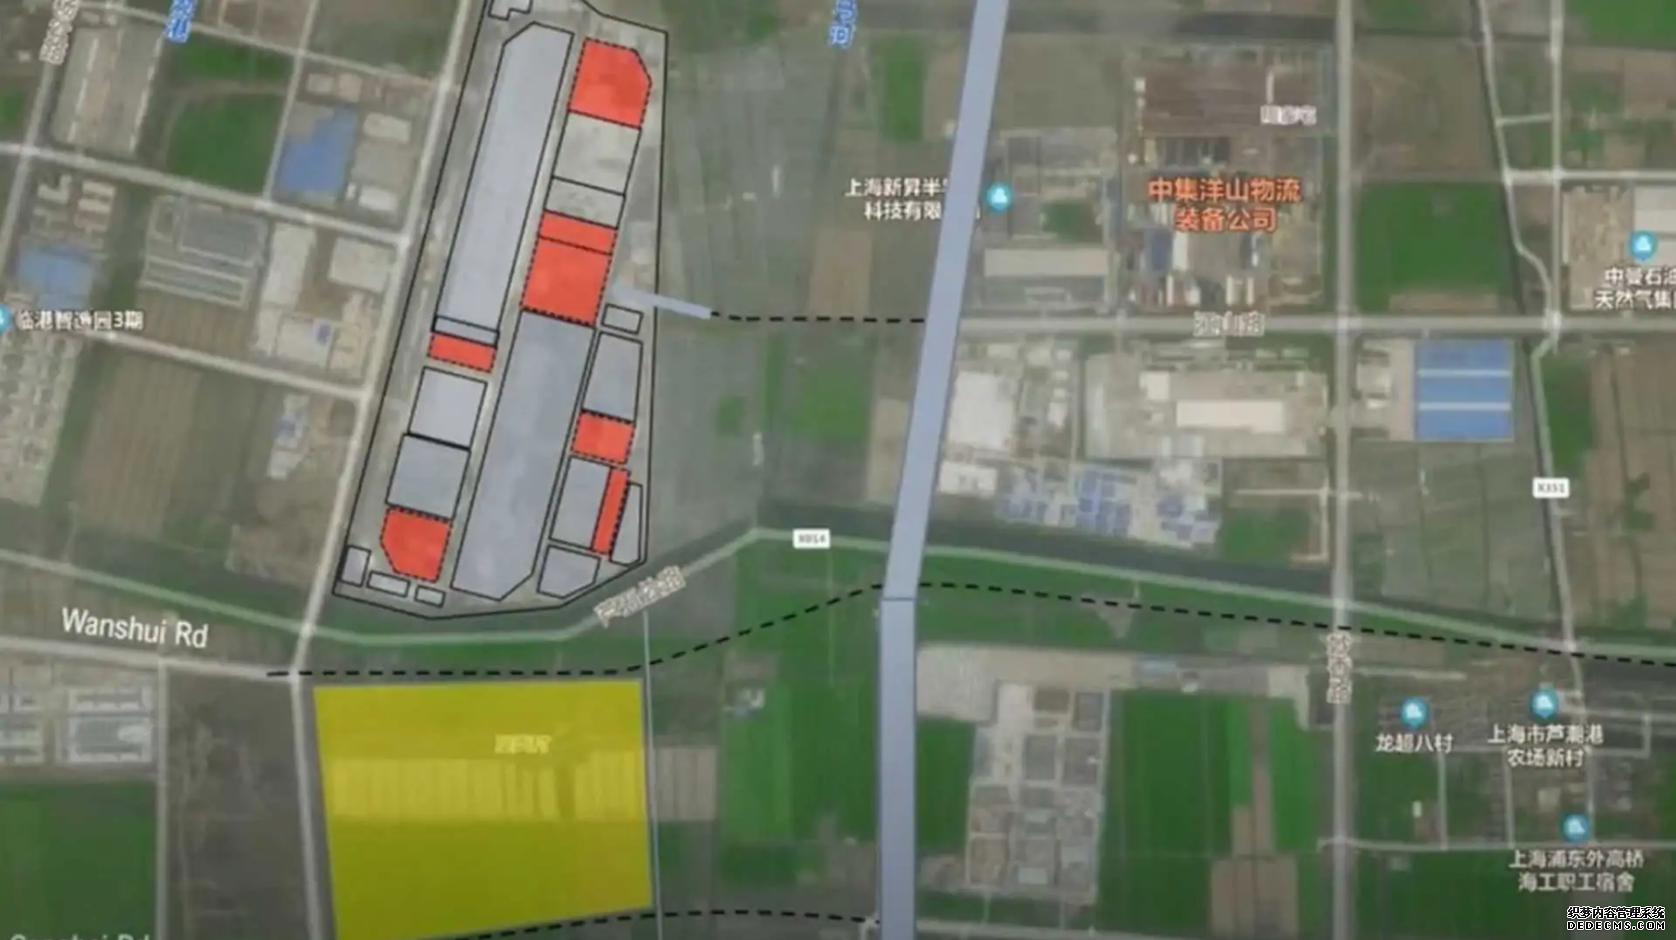 特斯拉上海超级工厂另购地 以建厂生产16万元新电动车